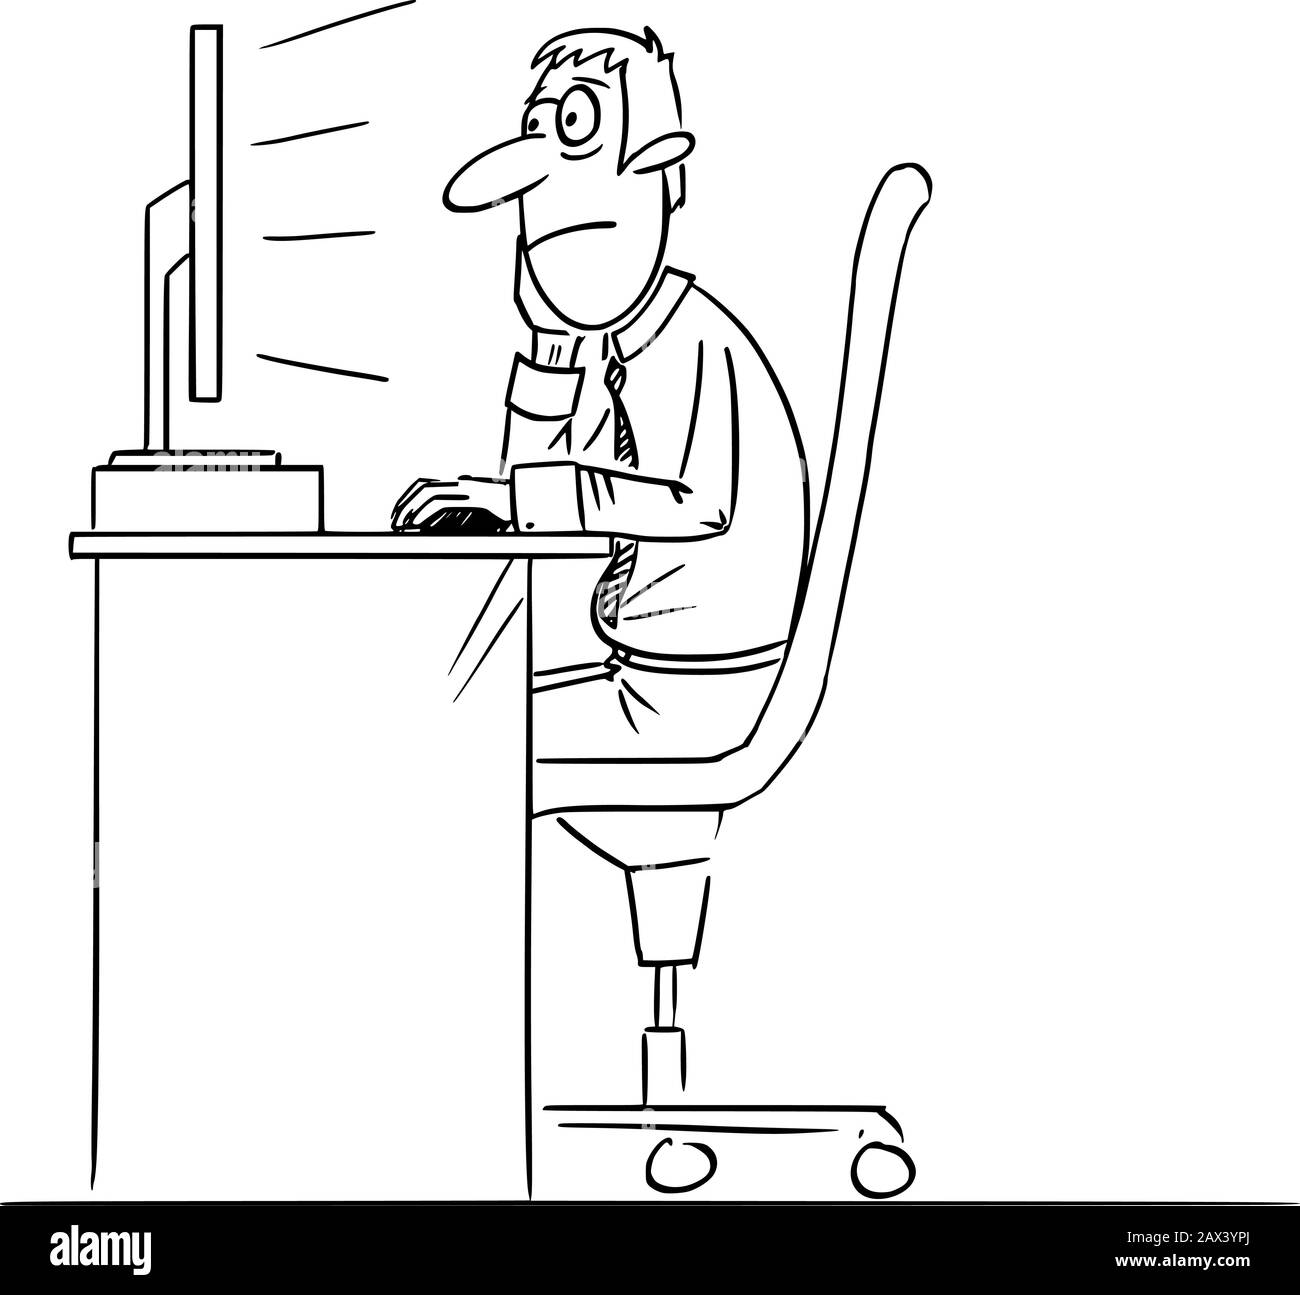 Vettore divertente fumetto disegno di un uomo annoiato, lavoratore ufficio o uomo d'affari che lavora sul computer. Illustrazione Vettoriale